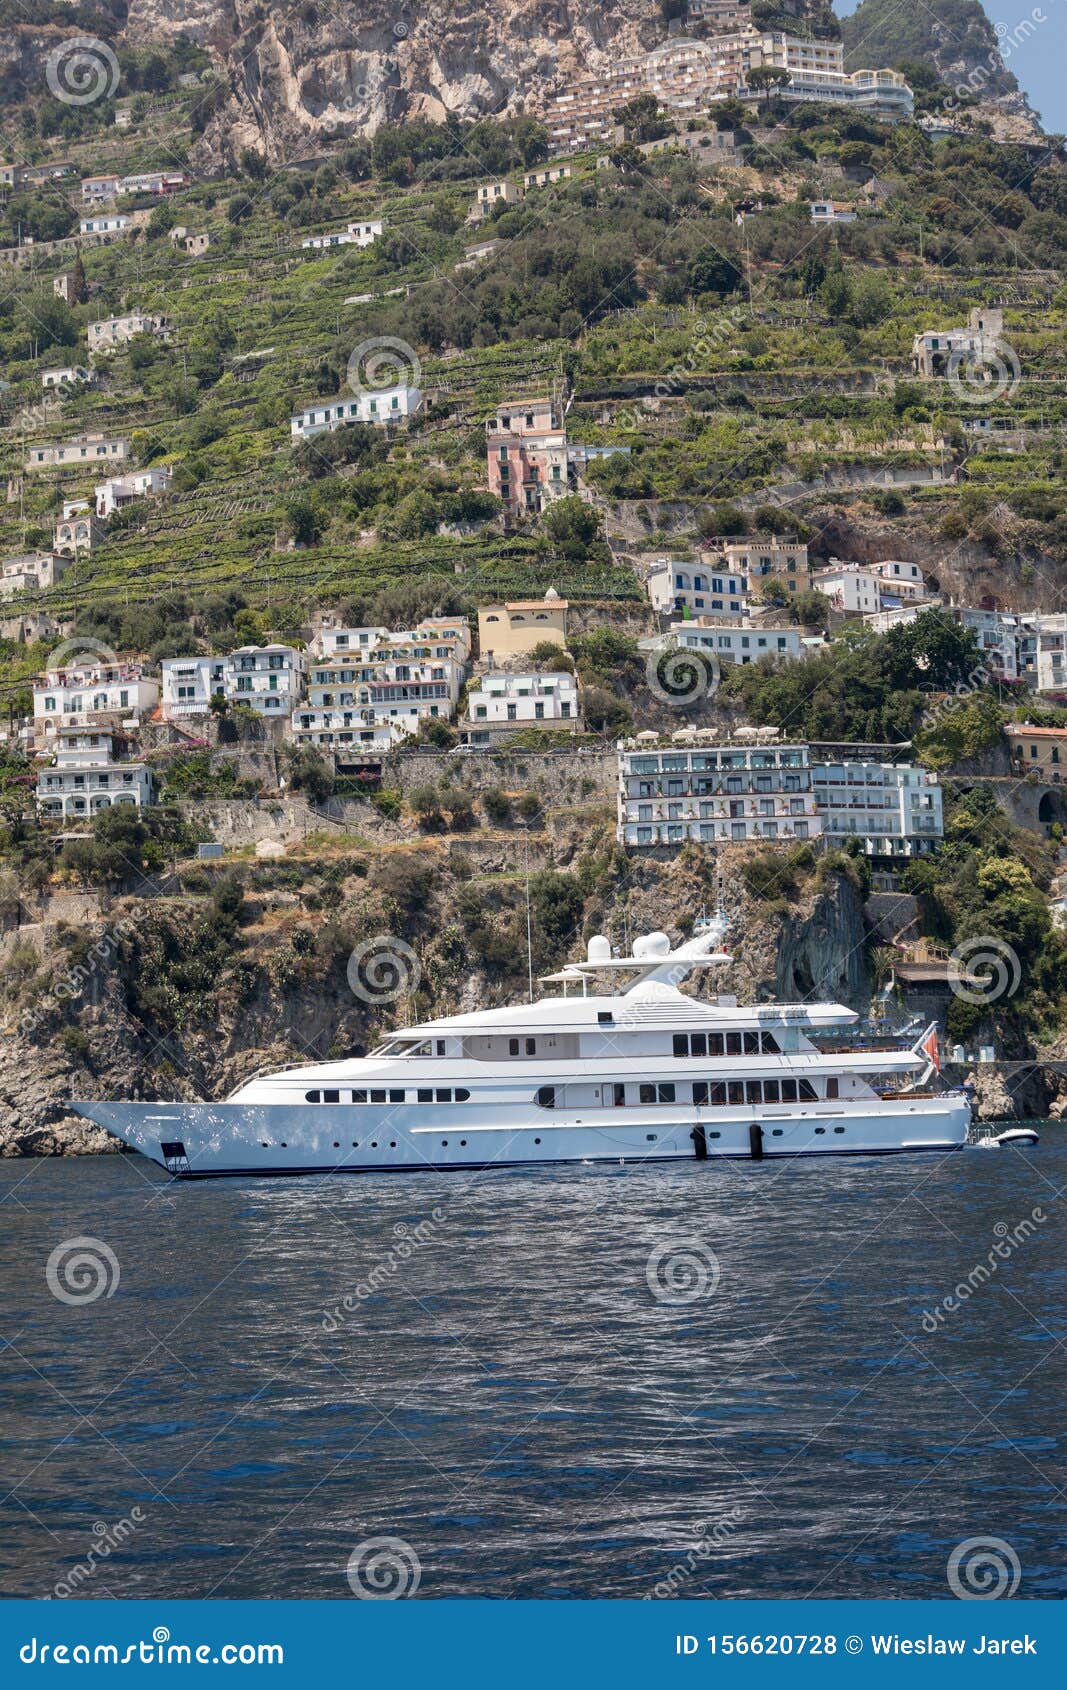 luxury yachts amalfi coast